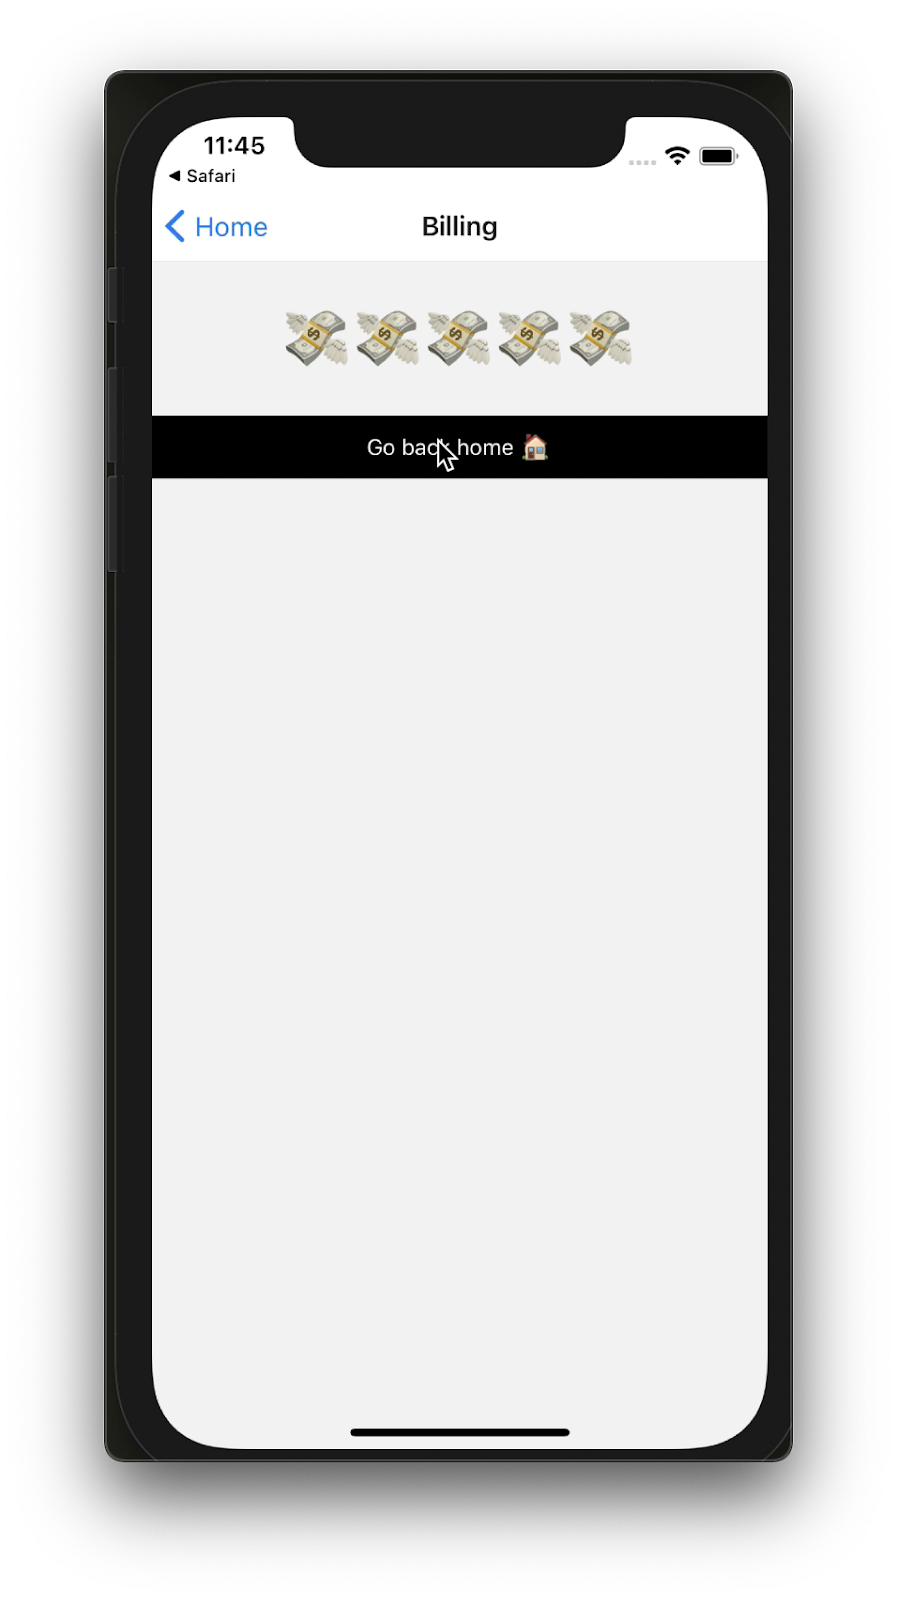 Captura de tela do aplicativo de faturamento no iOS com emojis de cifrão